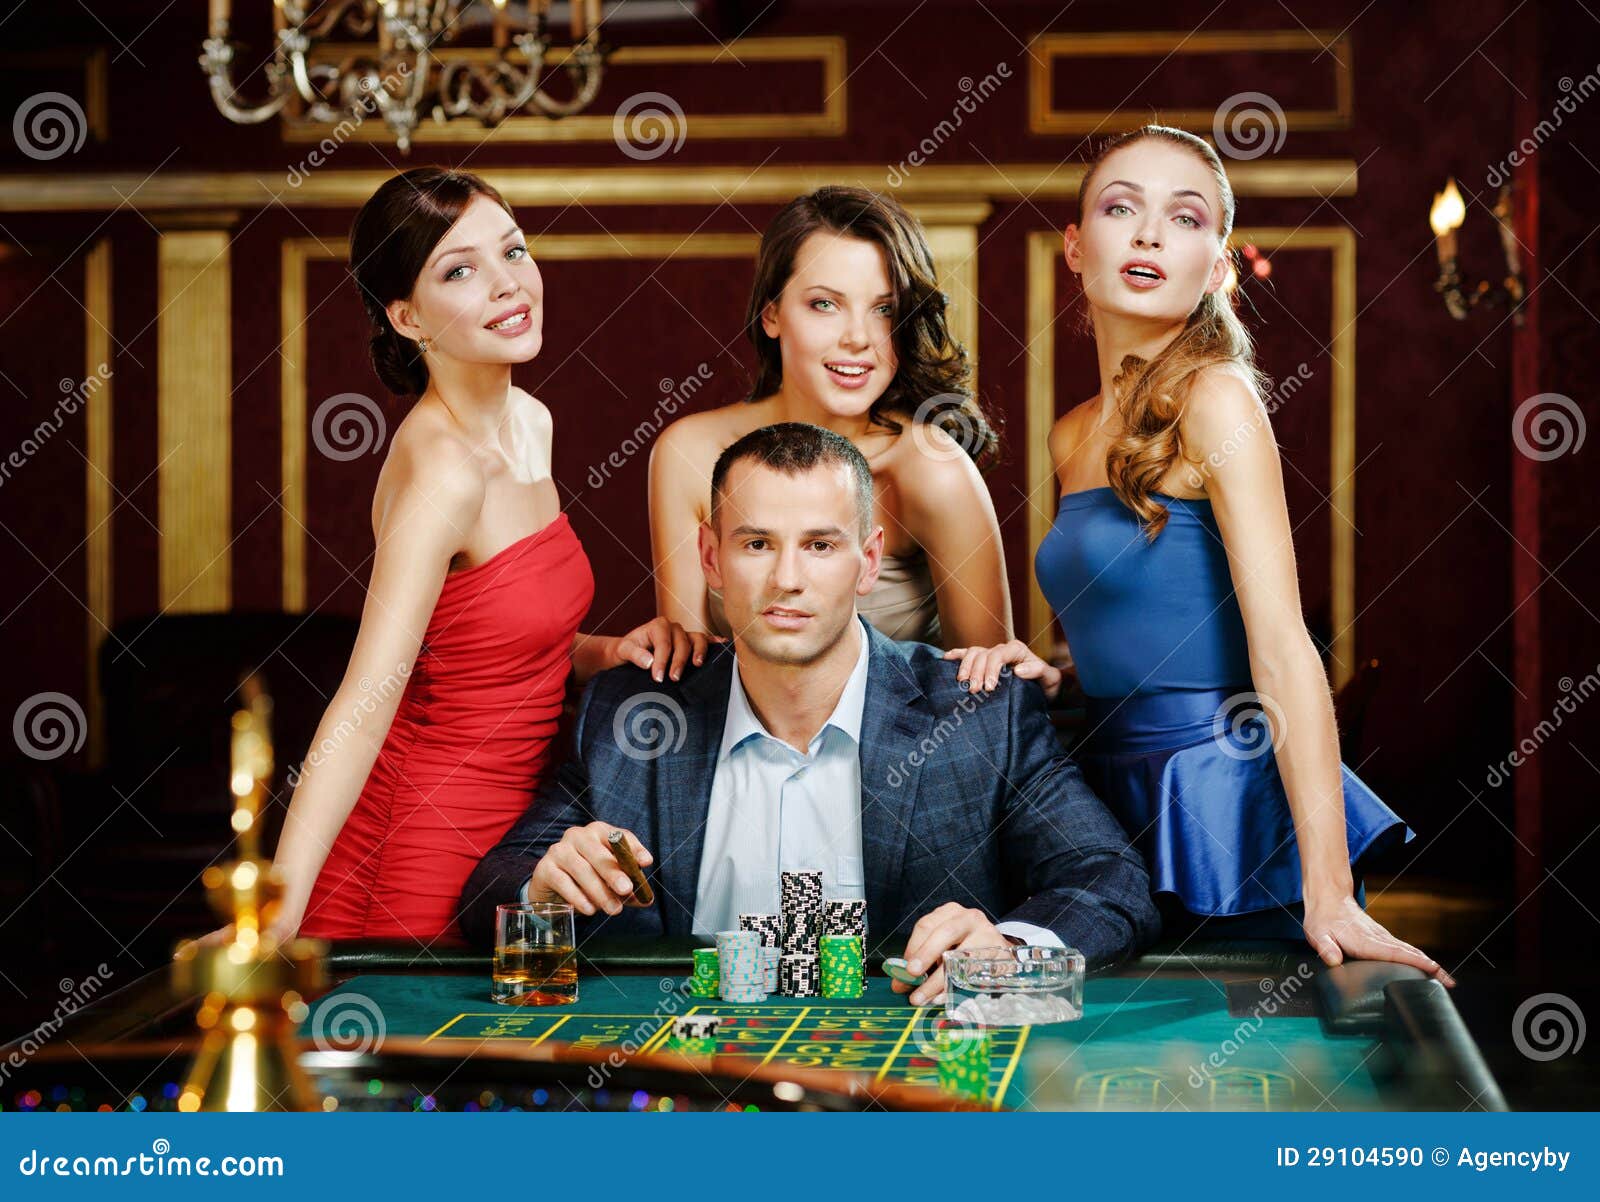 В окружении оставшиеся. Девушка в окружении мужчин. Девушка в окружениимужяин. Парень в окружении женщин. Богач в казино.